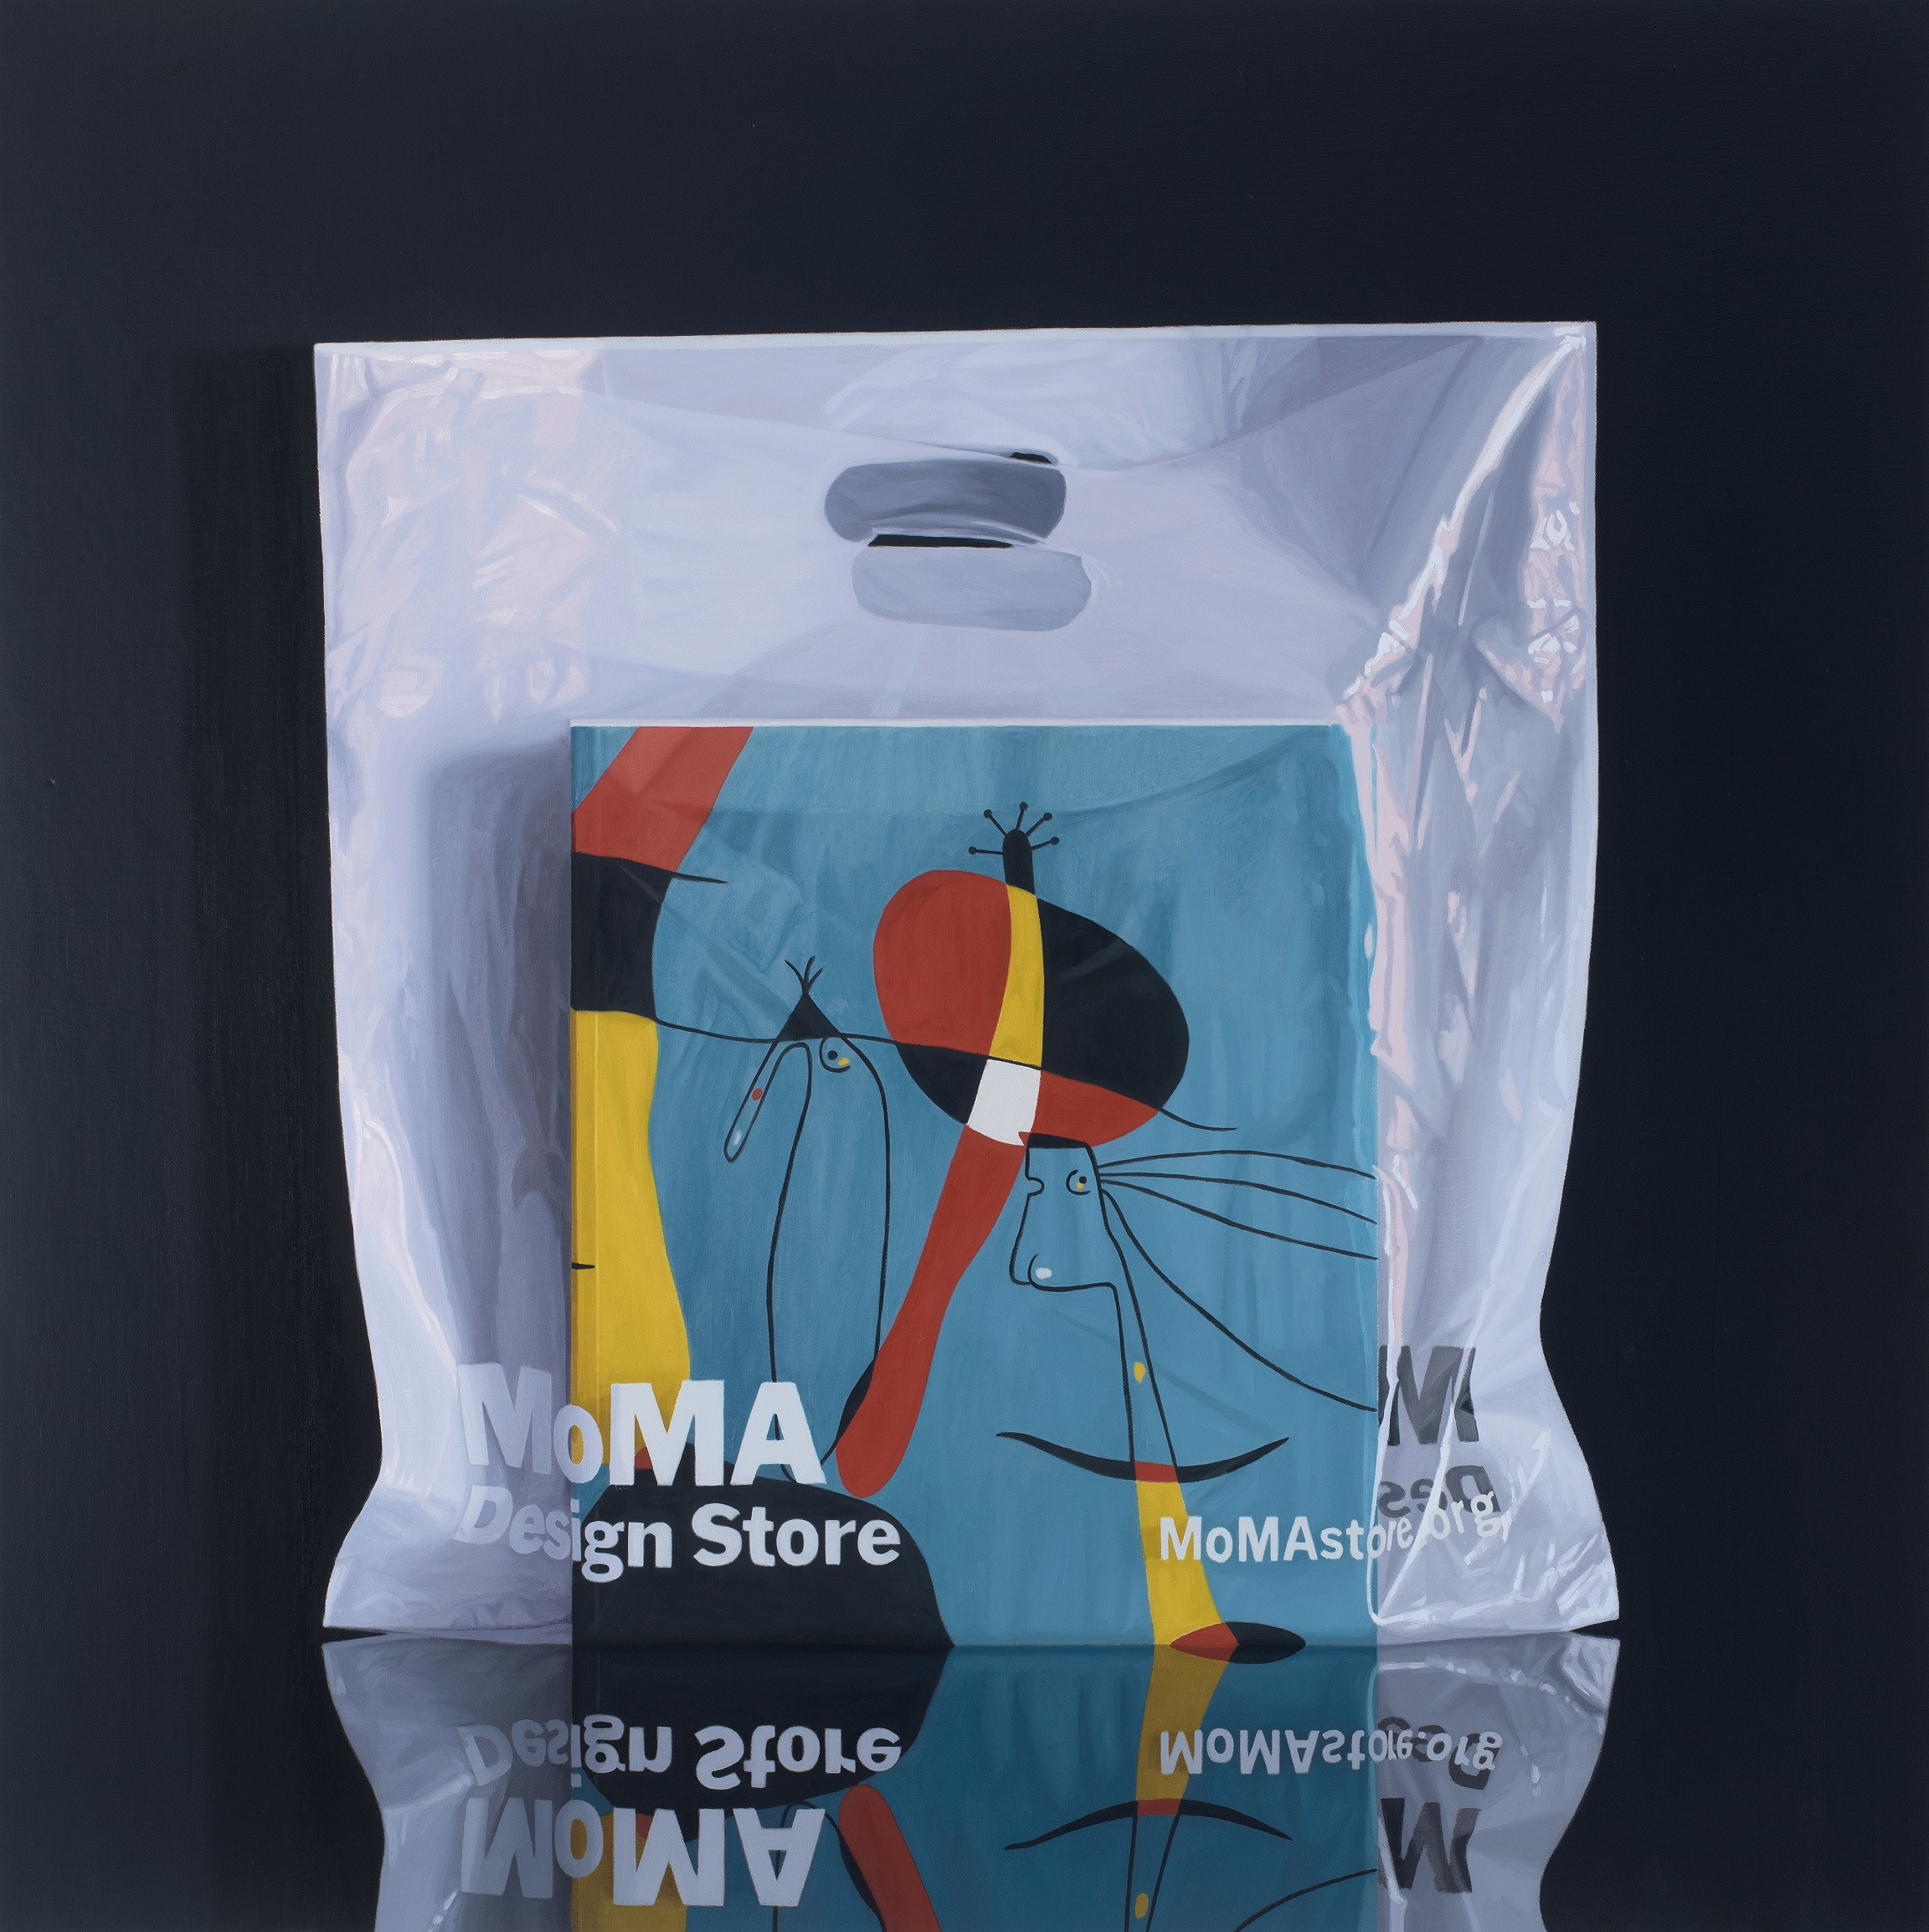 Miró @MOMA II, 2019